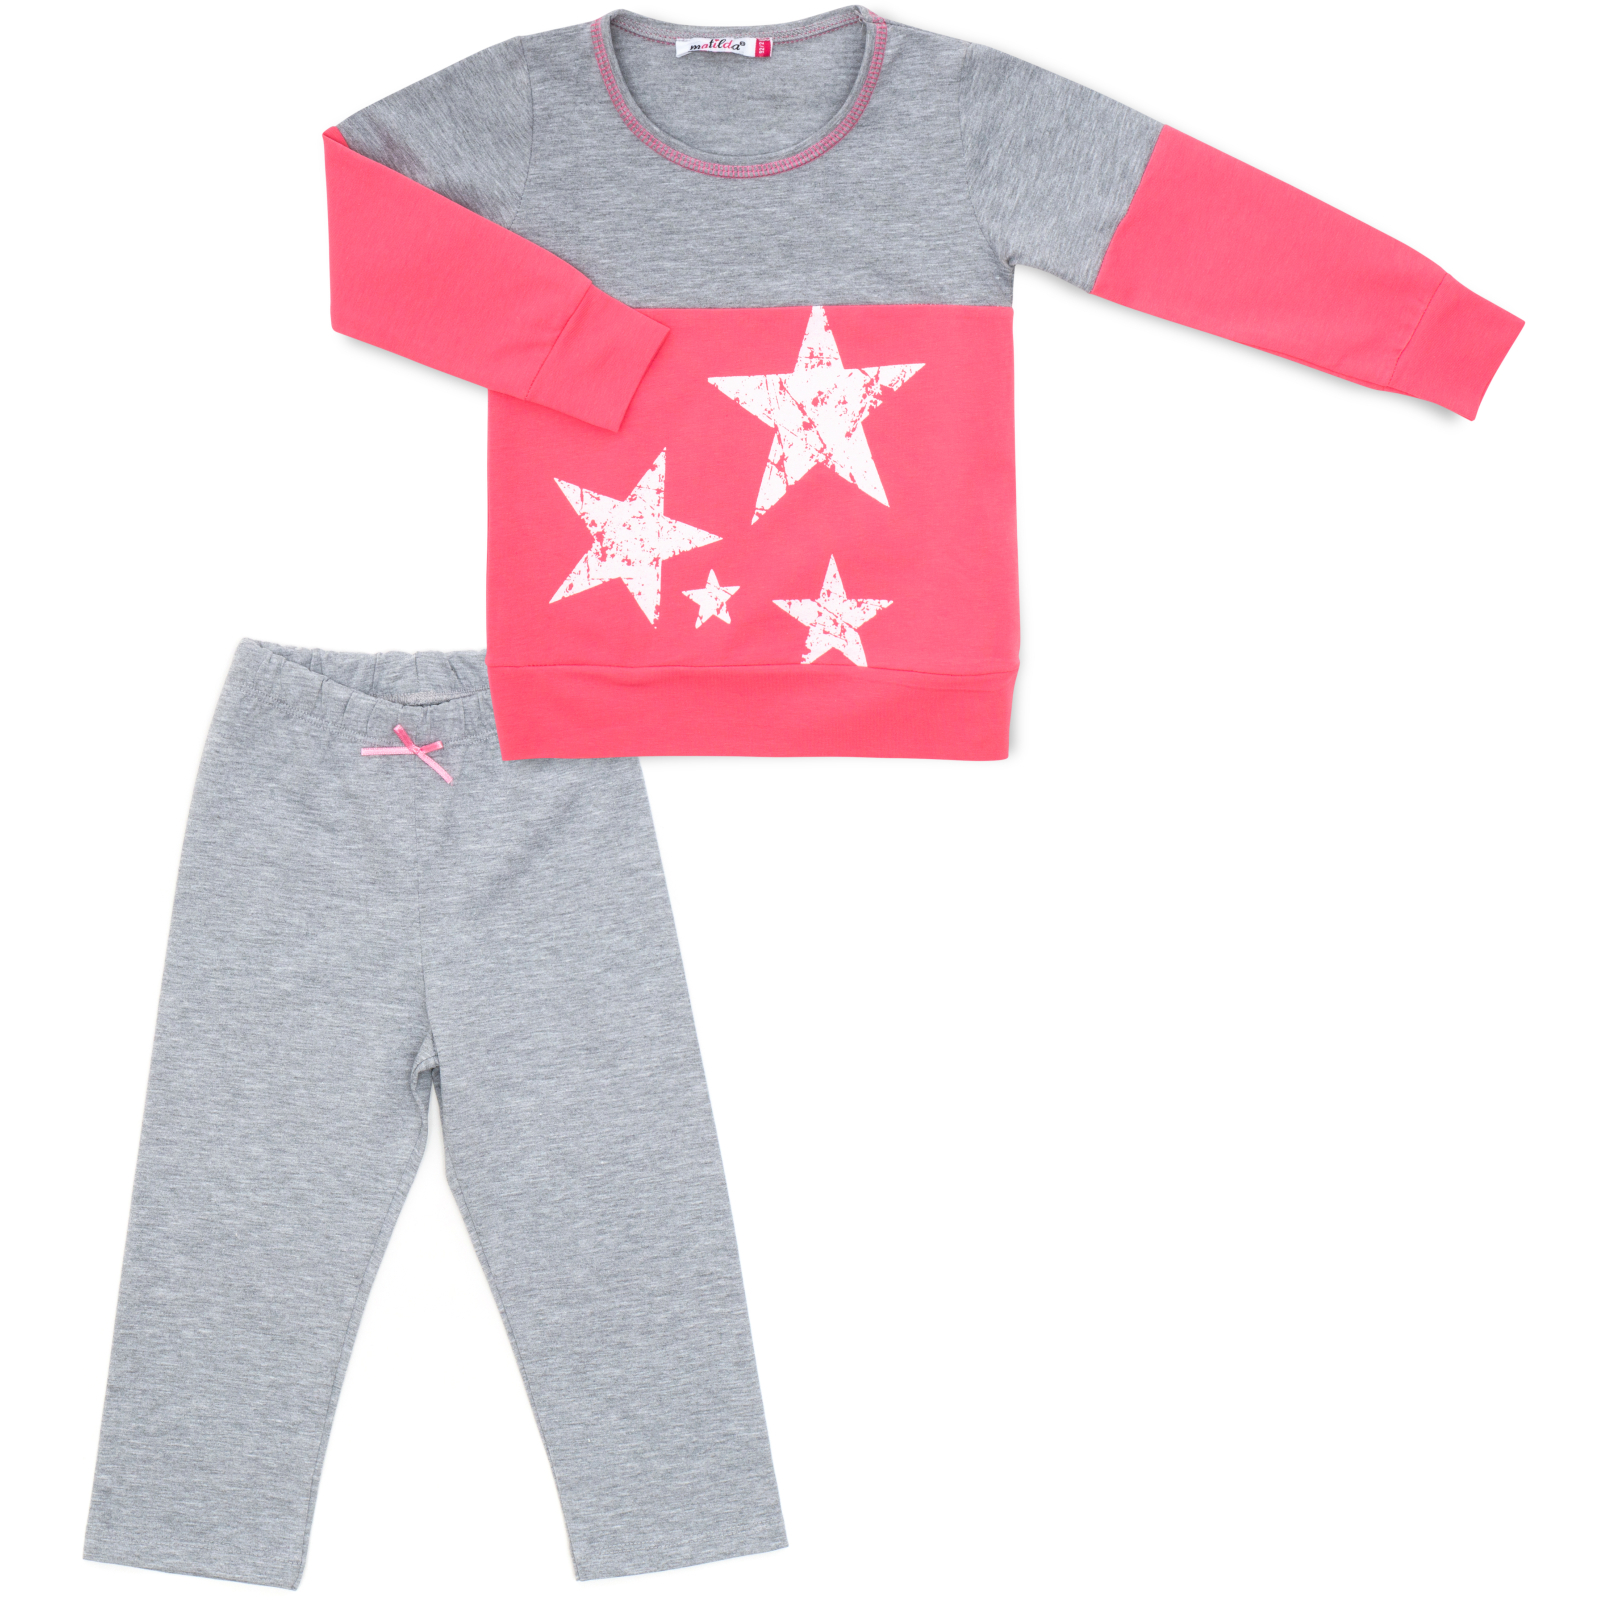 Пижама Matilda со звездочками (7167-92G-pink)